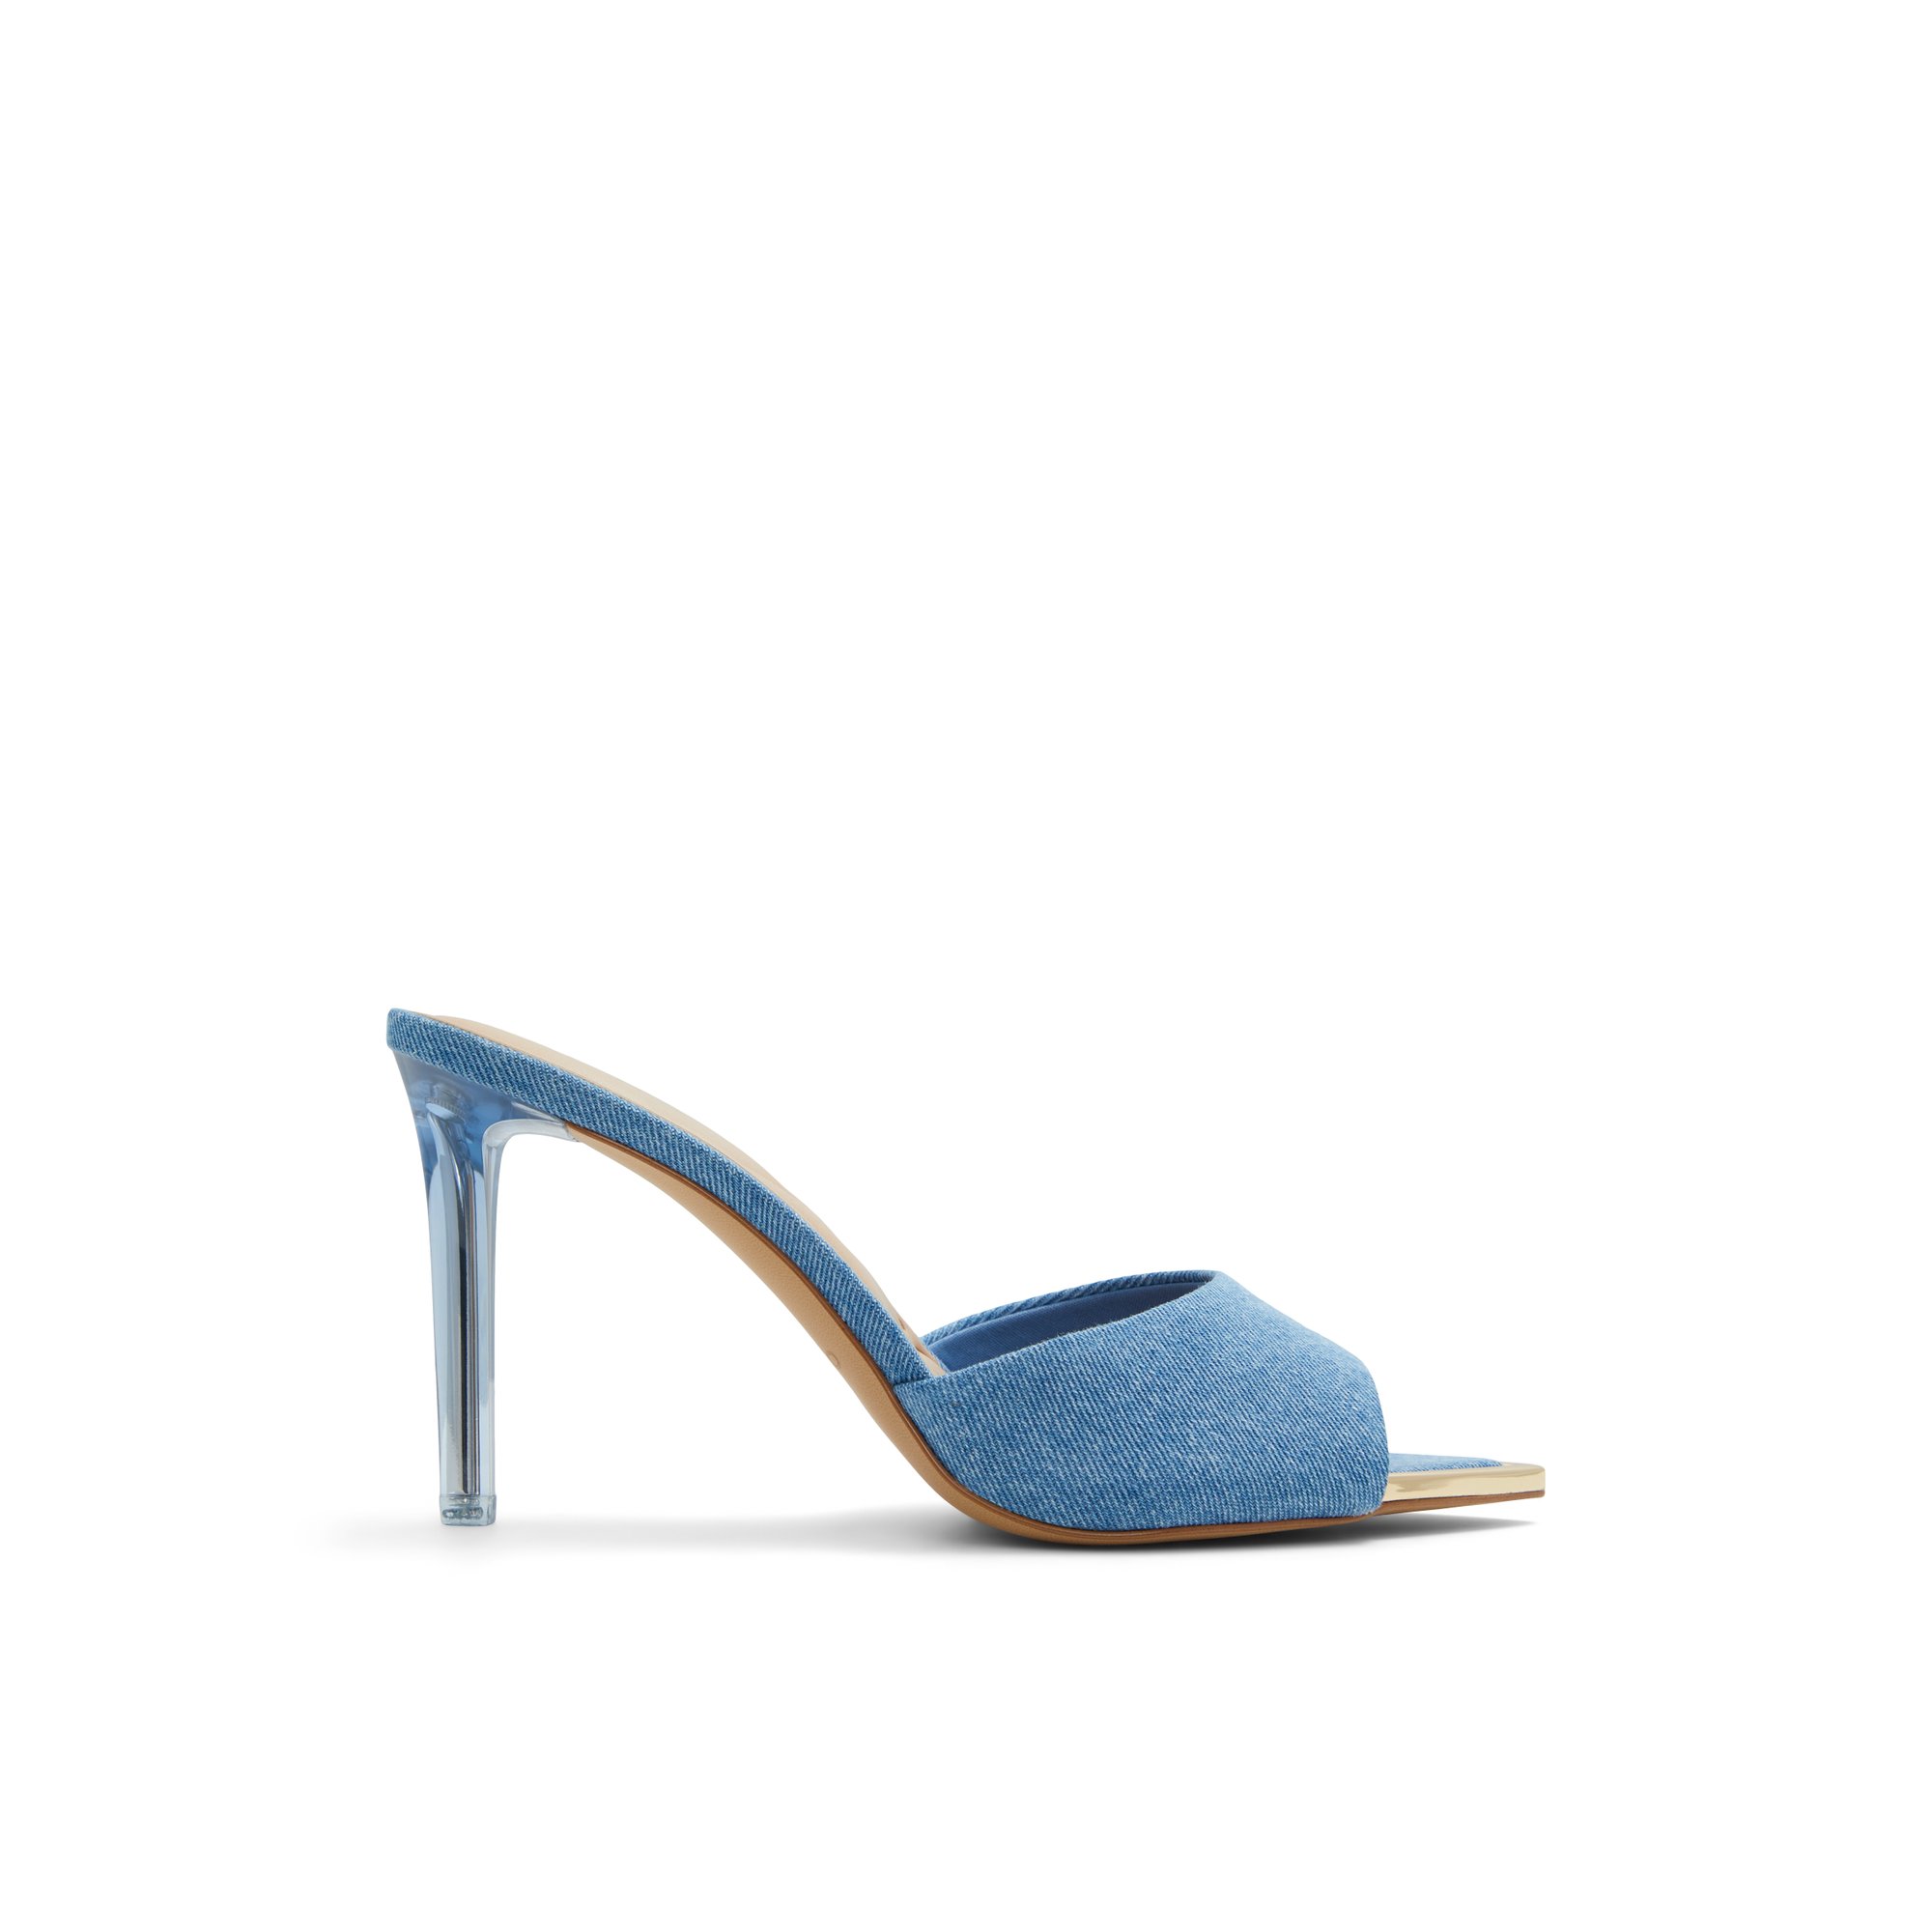 ALDO Anniebrilden - Women's Heeled Mules Sandals - Blue